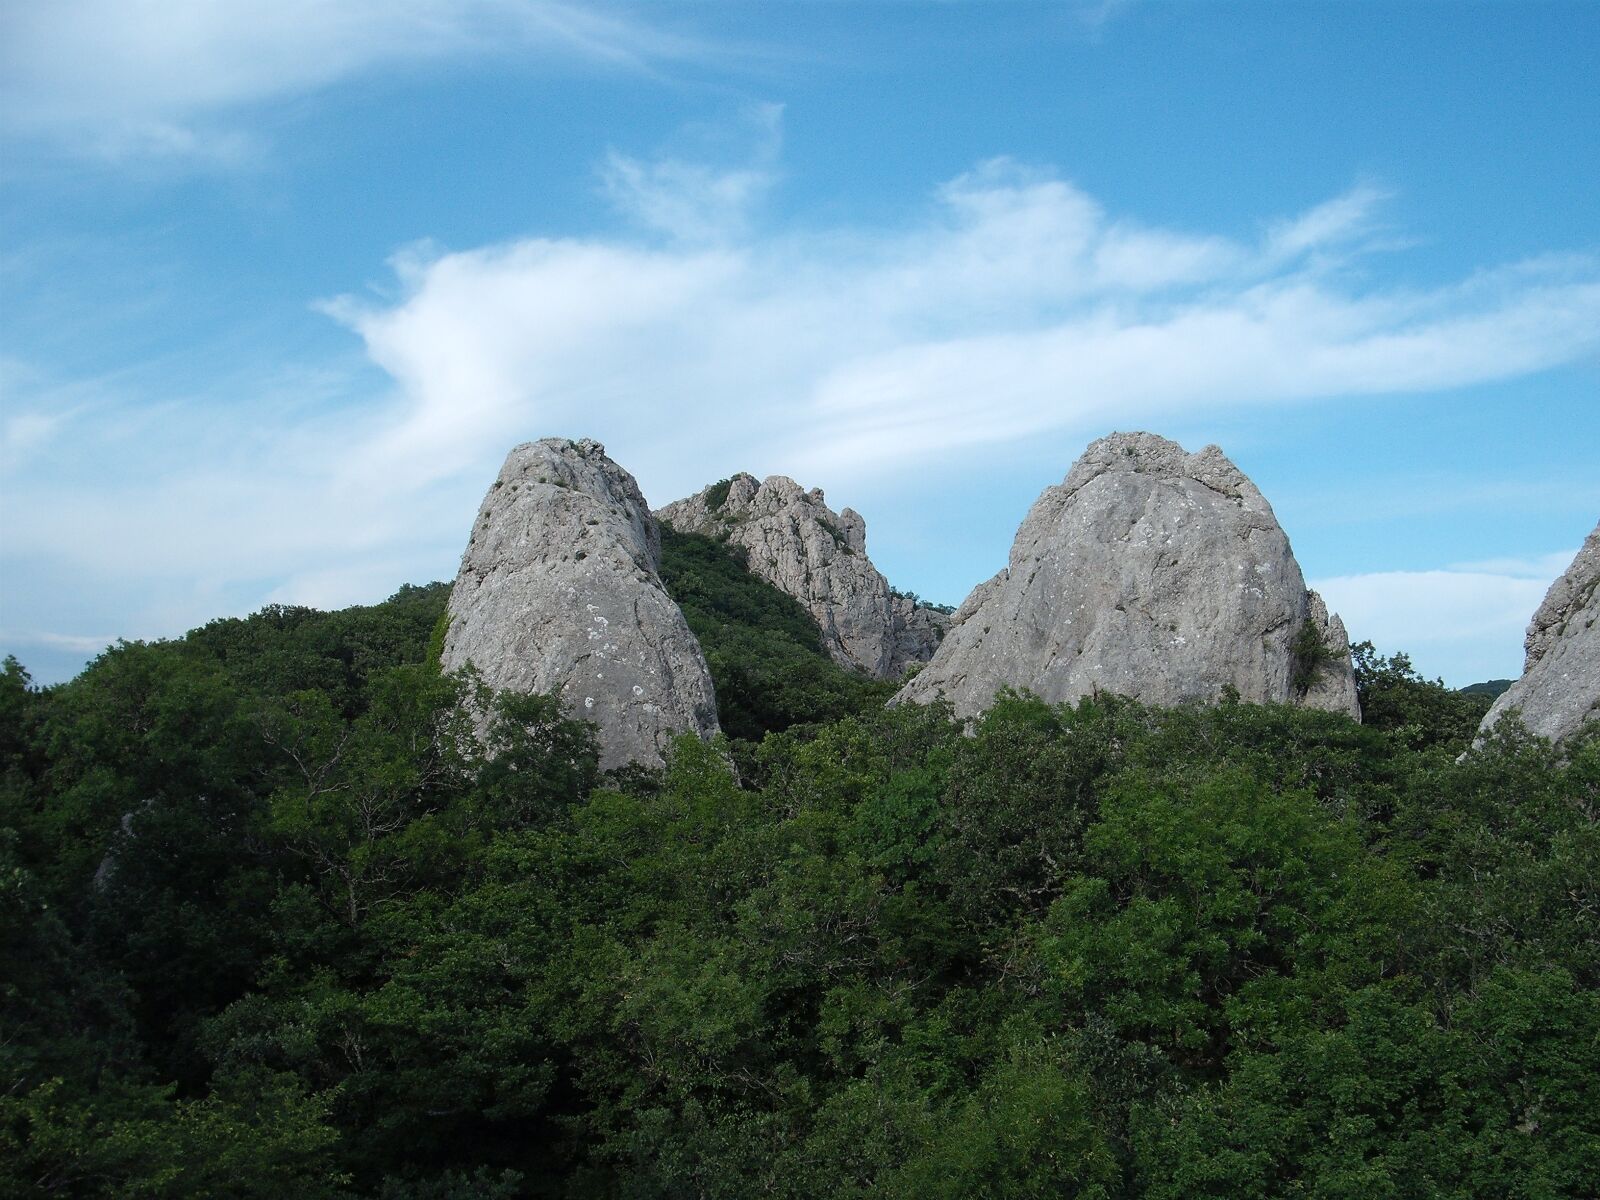 Fujifilm A850 sample photo. Crimea, mountains, landscape photography